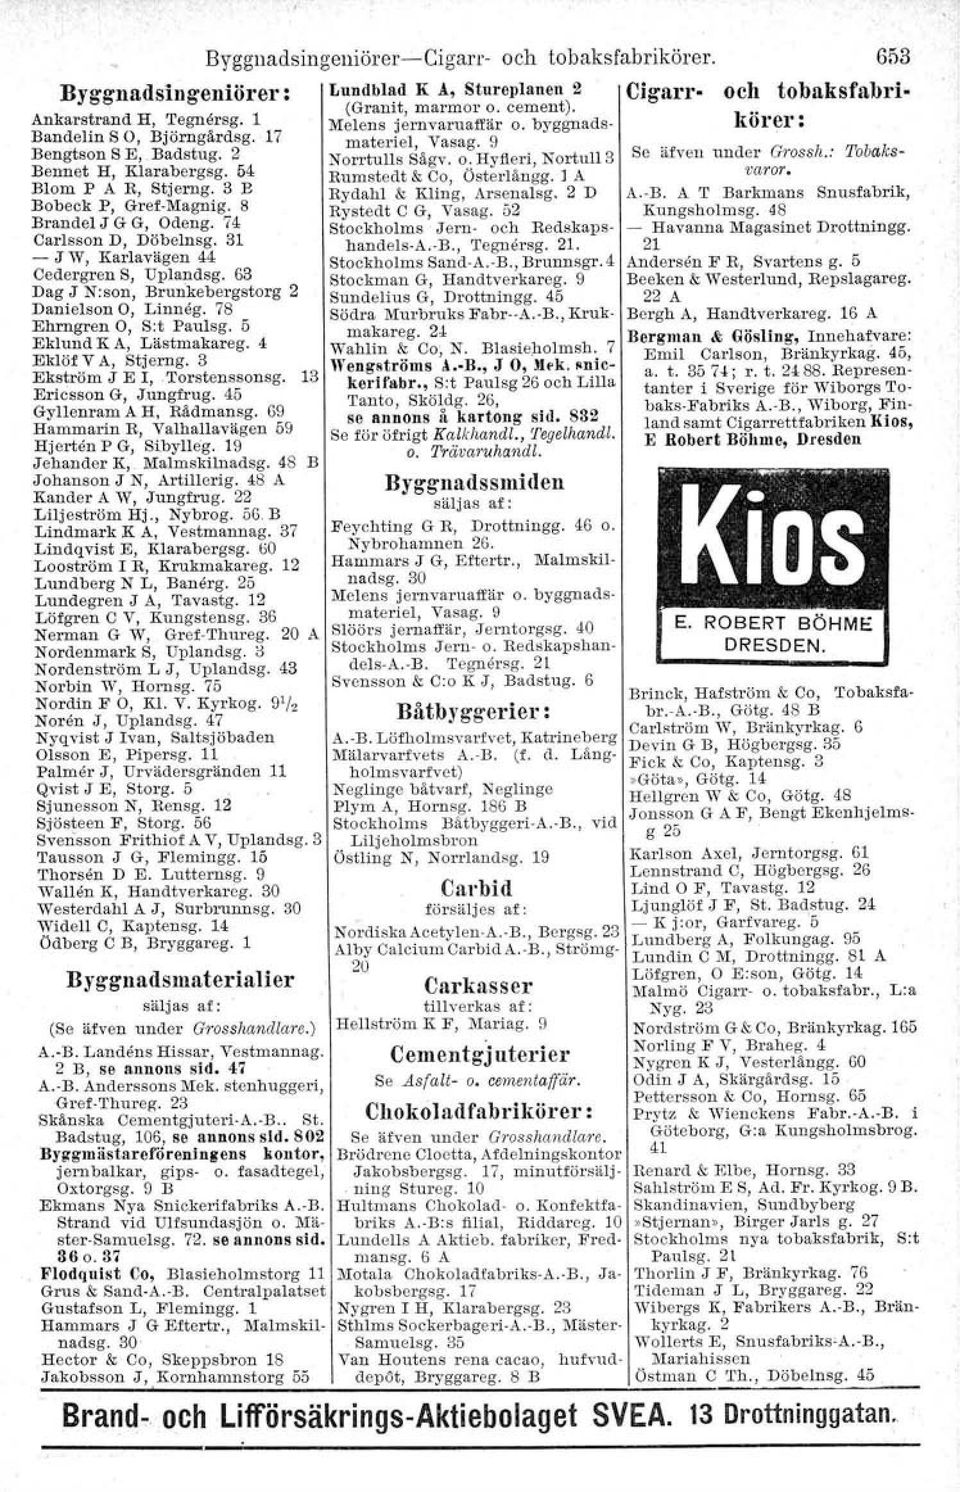 : Tobaks- Bennet H, Klarabergsg; 54 Rumstedt & Co, Österlångg. ] A vator. Blom P A R, Stjerng: 3 E Rydahl & Kling, Arsenalsg. 2 D A.-B. A T Barkmans Snusfabrik, Bobeck.